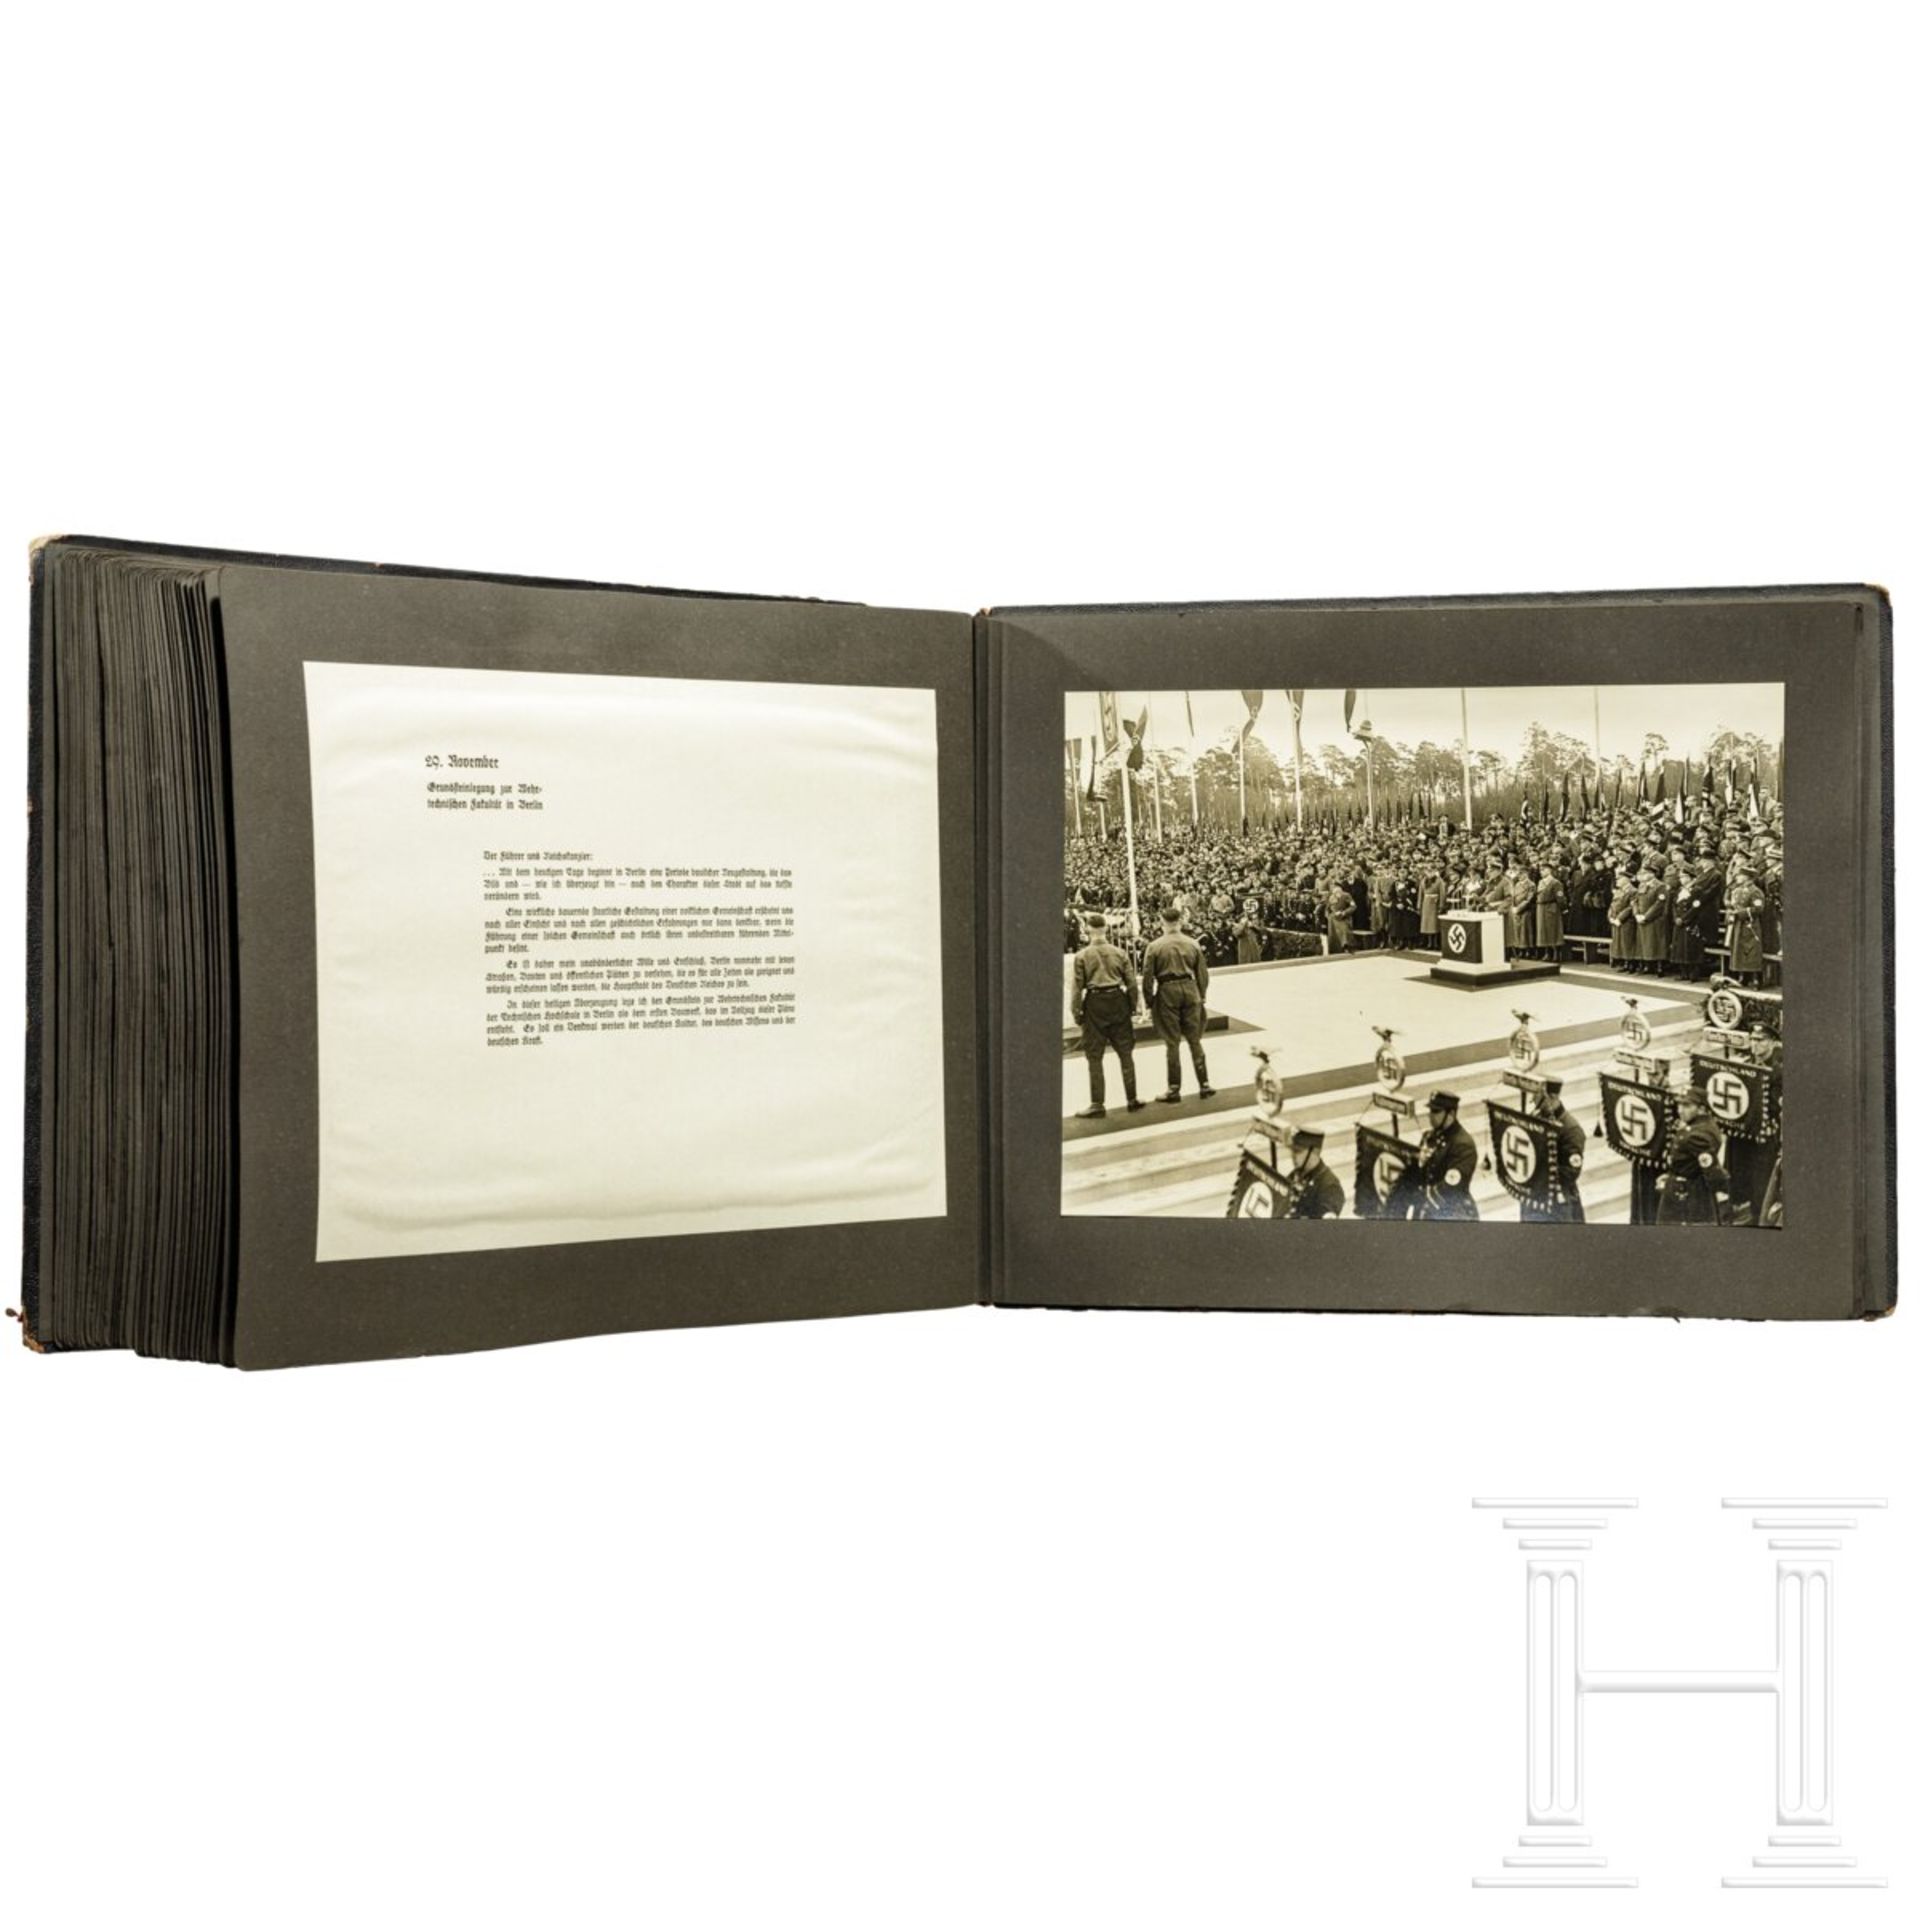 Geschenk-Fotoalbum der Partei 1937 mit 56 großformatigen Fotos und Textblättern - Image 7 of 17